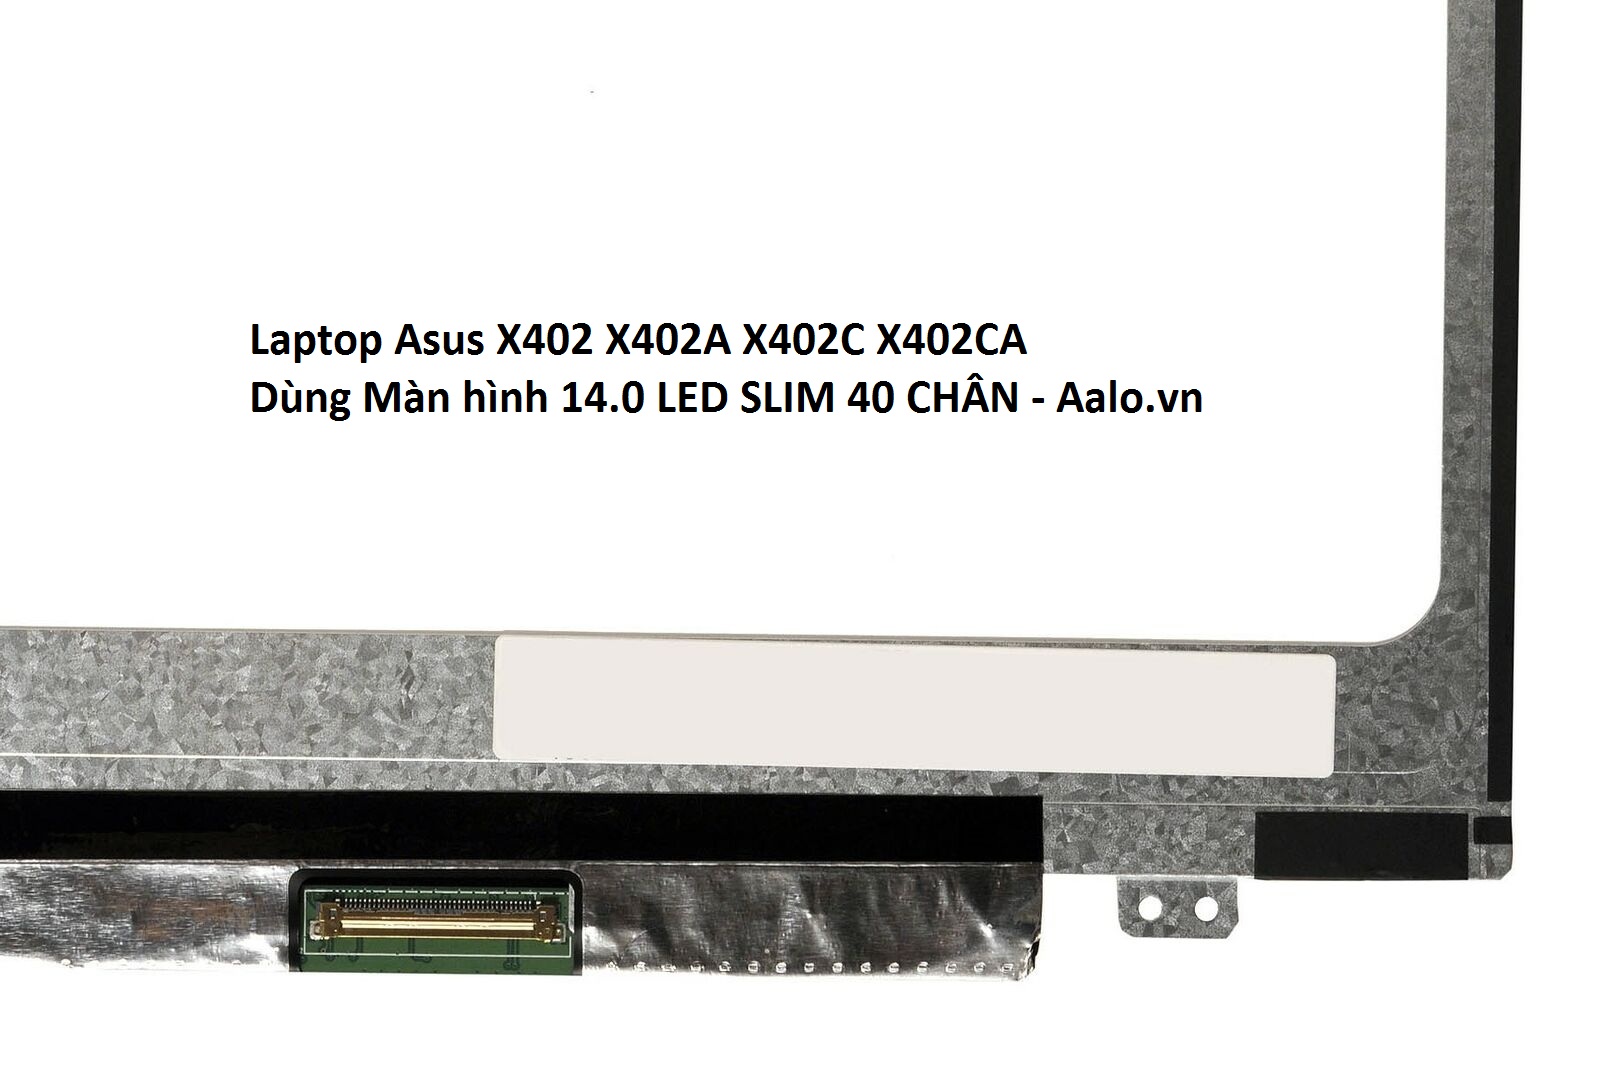 Màn hình Laptop Asus X402 X402A X402C X402CA - Aalo.vn